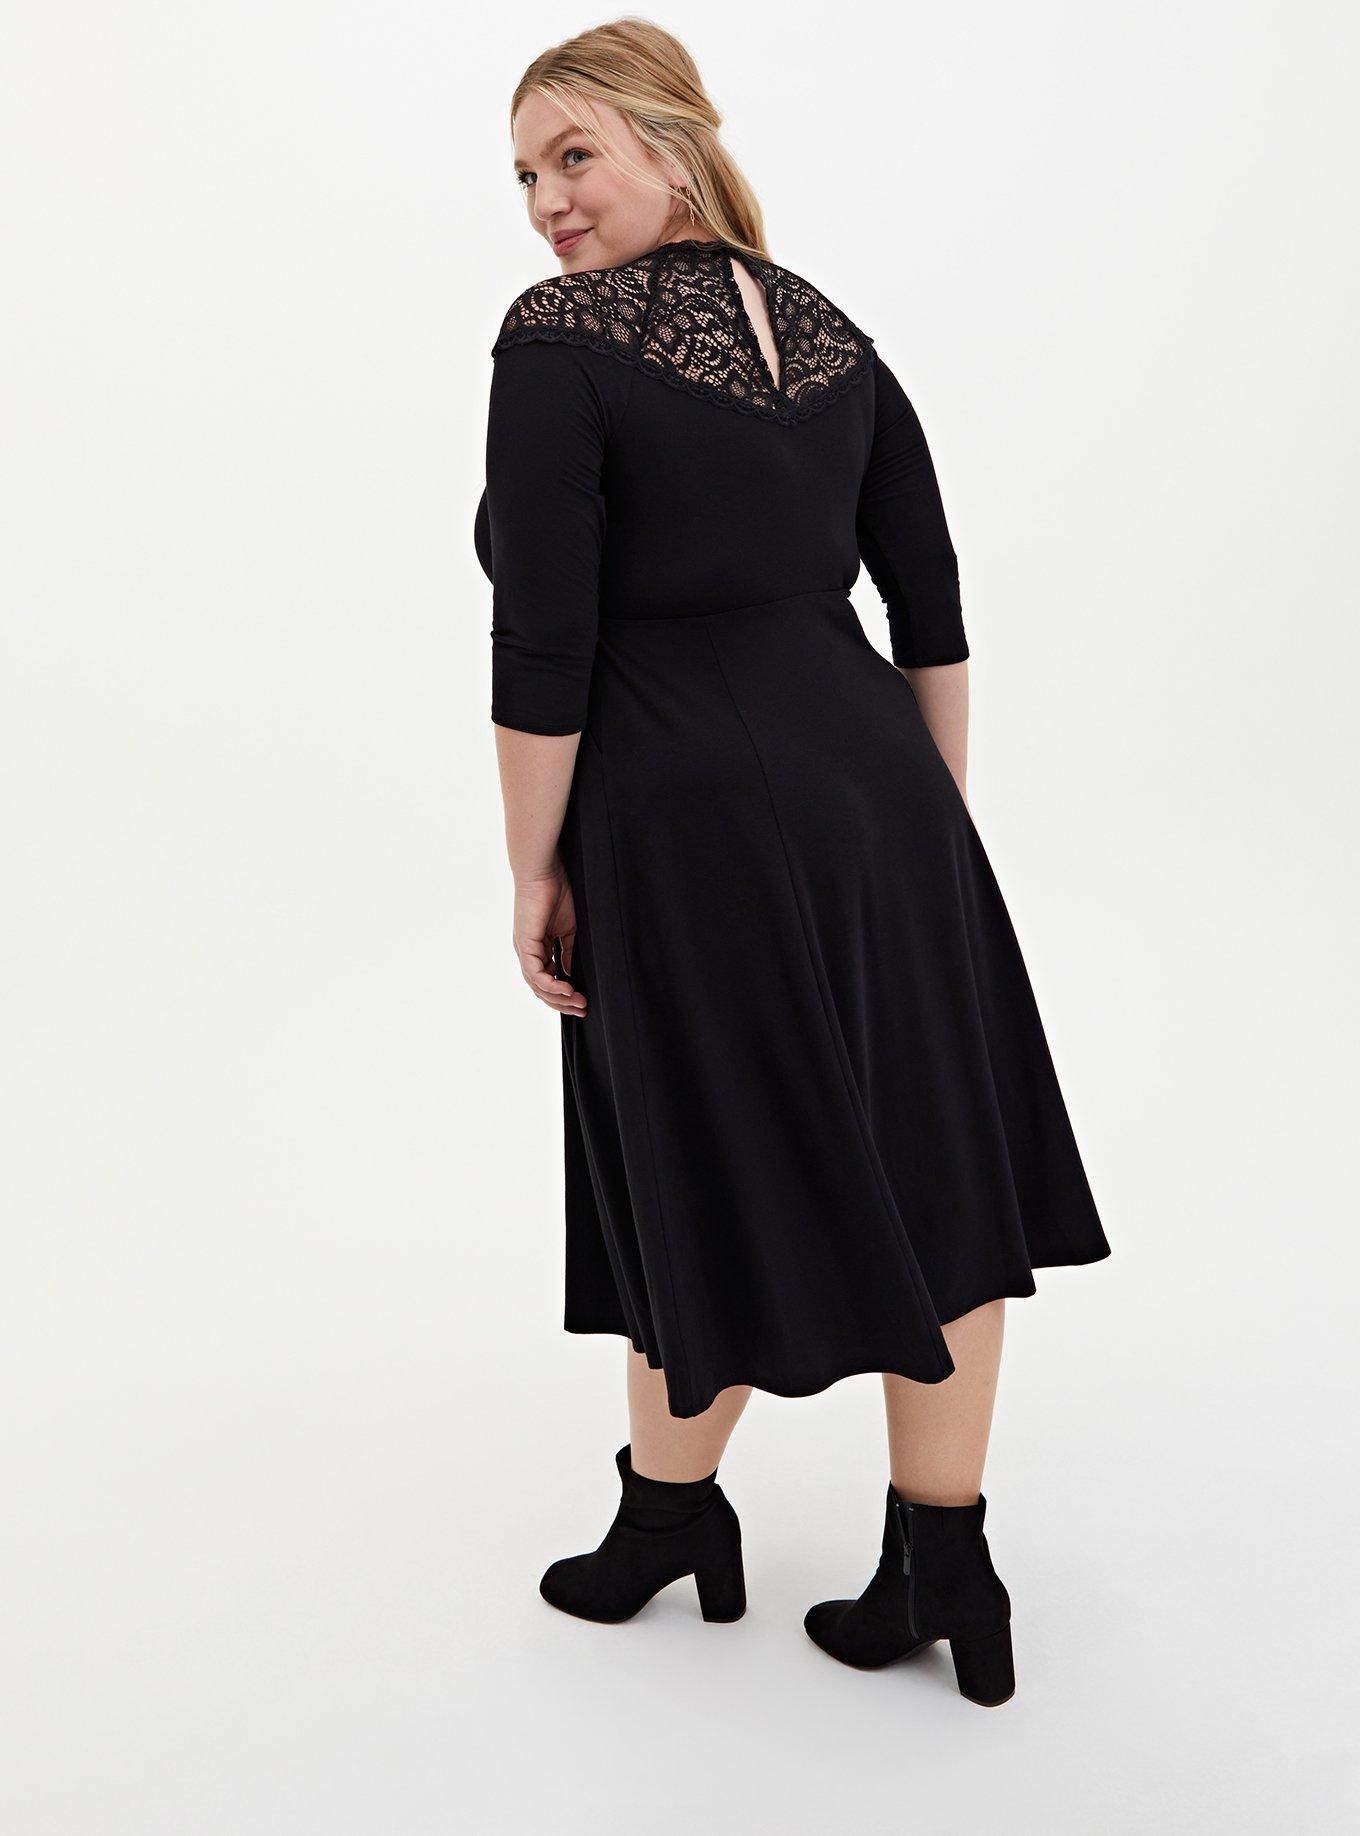 Plus Size - Super Soft & Lace Yoke Black Midi Dress - Torrid